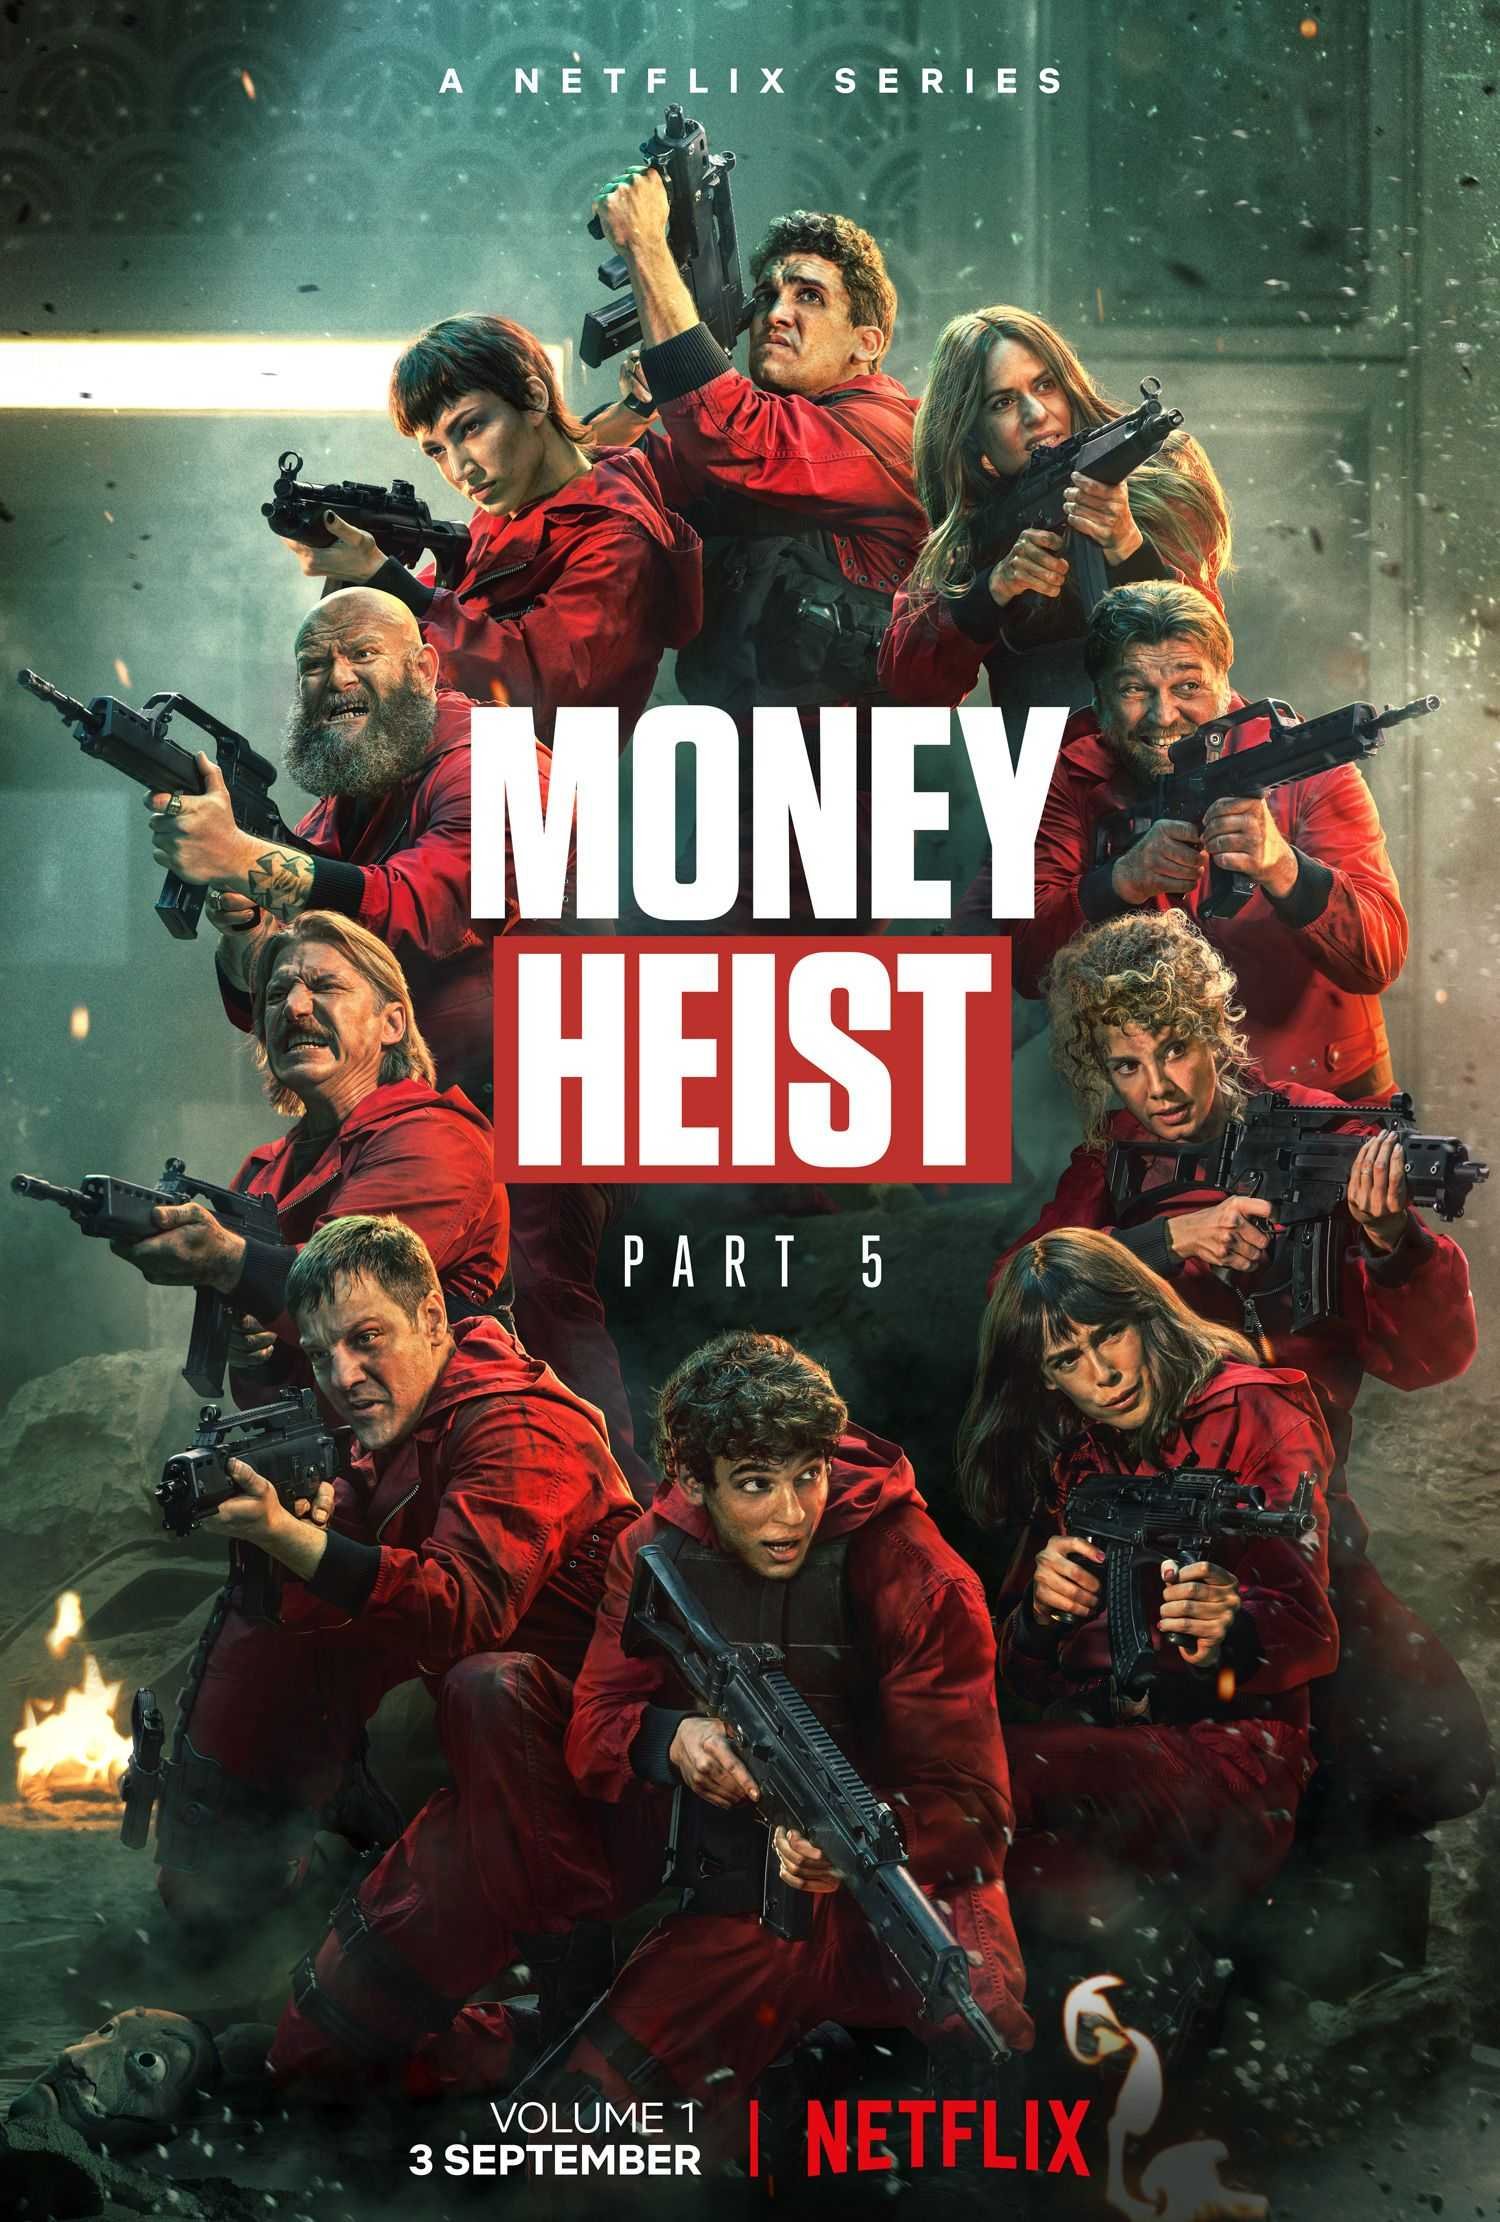 ซีรี่ย์ฝรั่ง - Money Heist Season 5 Part 1 (2021) ทรชนคนปรนโลก ซีซั่น 5 ตอนที่ 1-5 พากย์ไทย